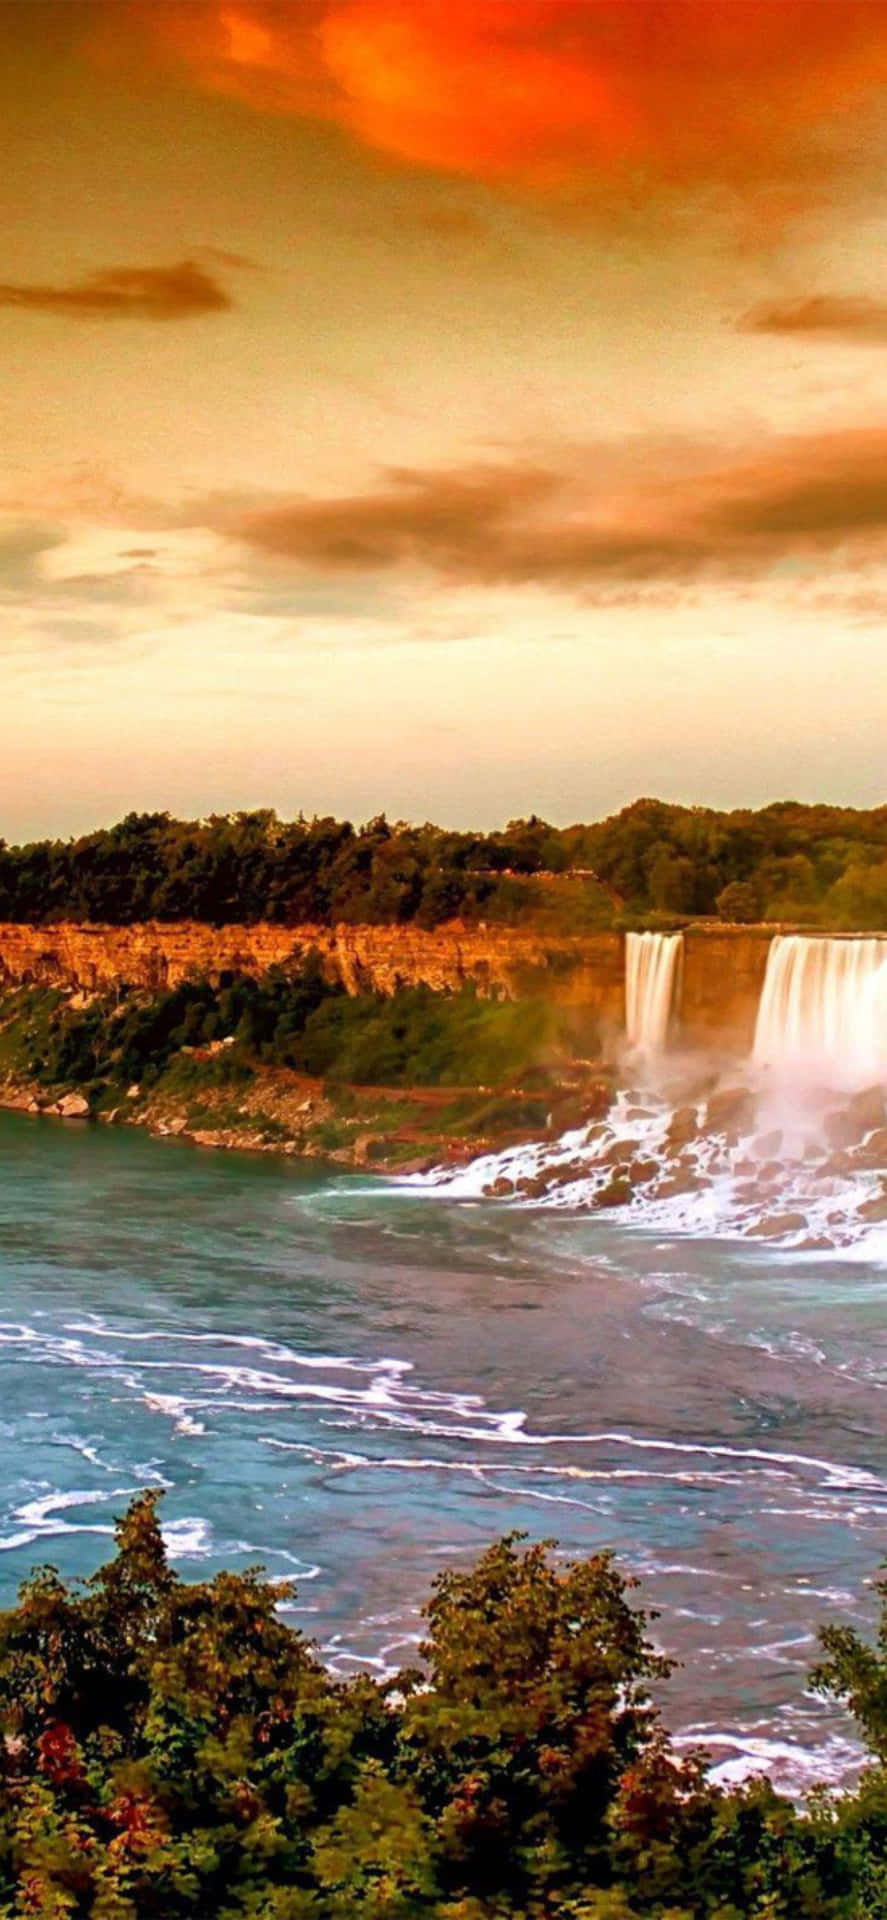 Iphonex Bakgrundsbild På Solnedgången I Niagara Falls Canada.